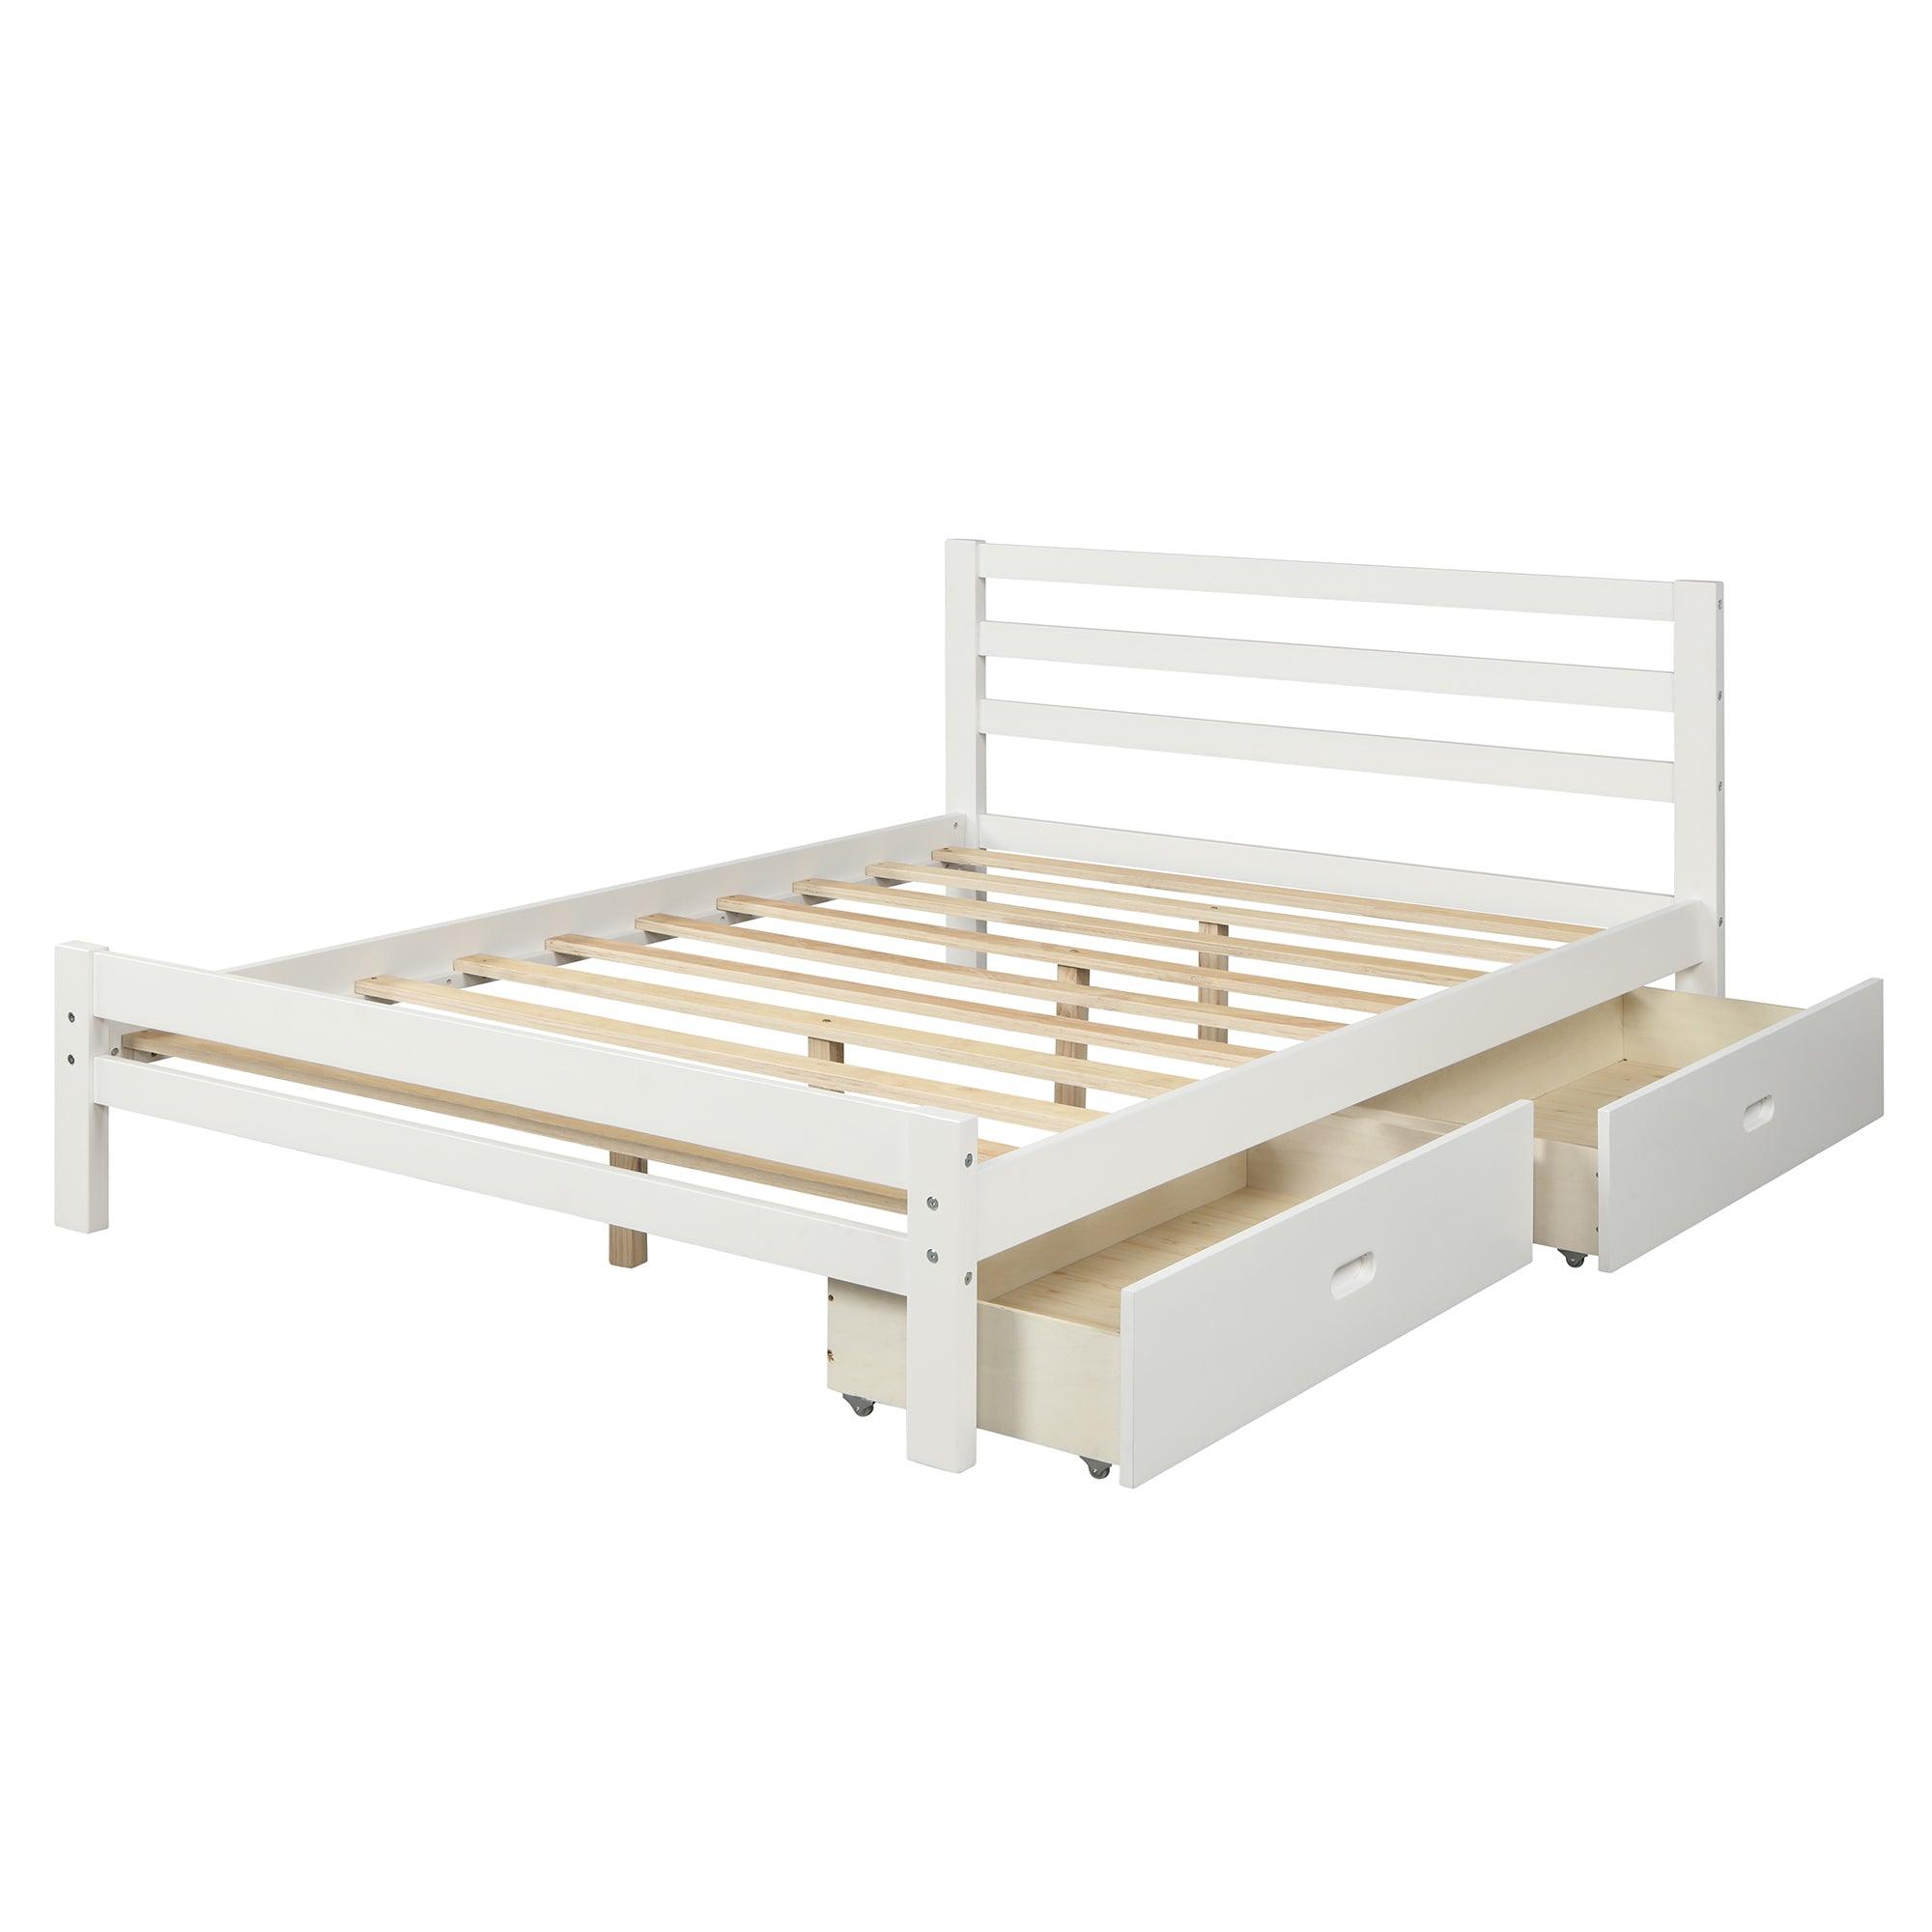 Bellemave Wood Platform Bed with 2 Drawers - Bellemave